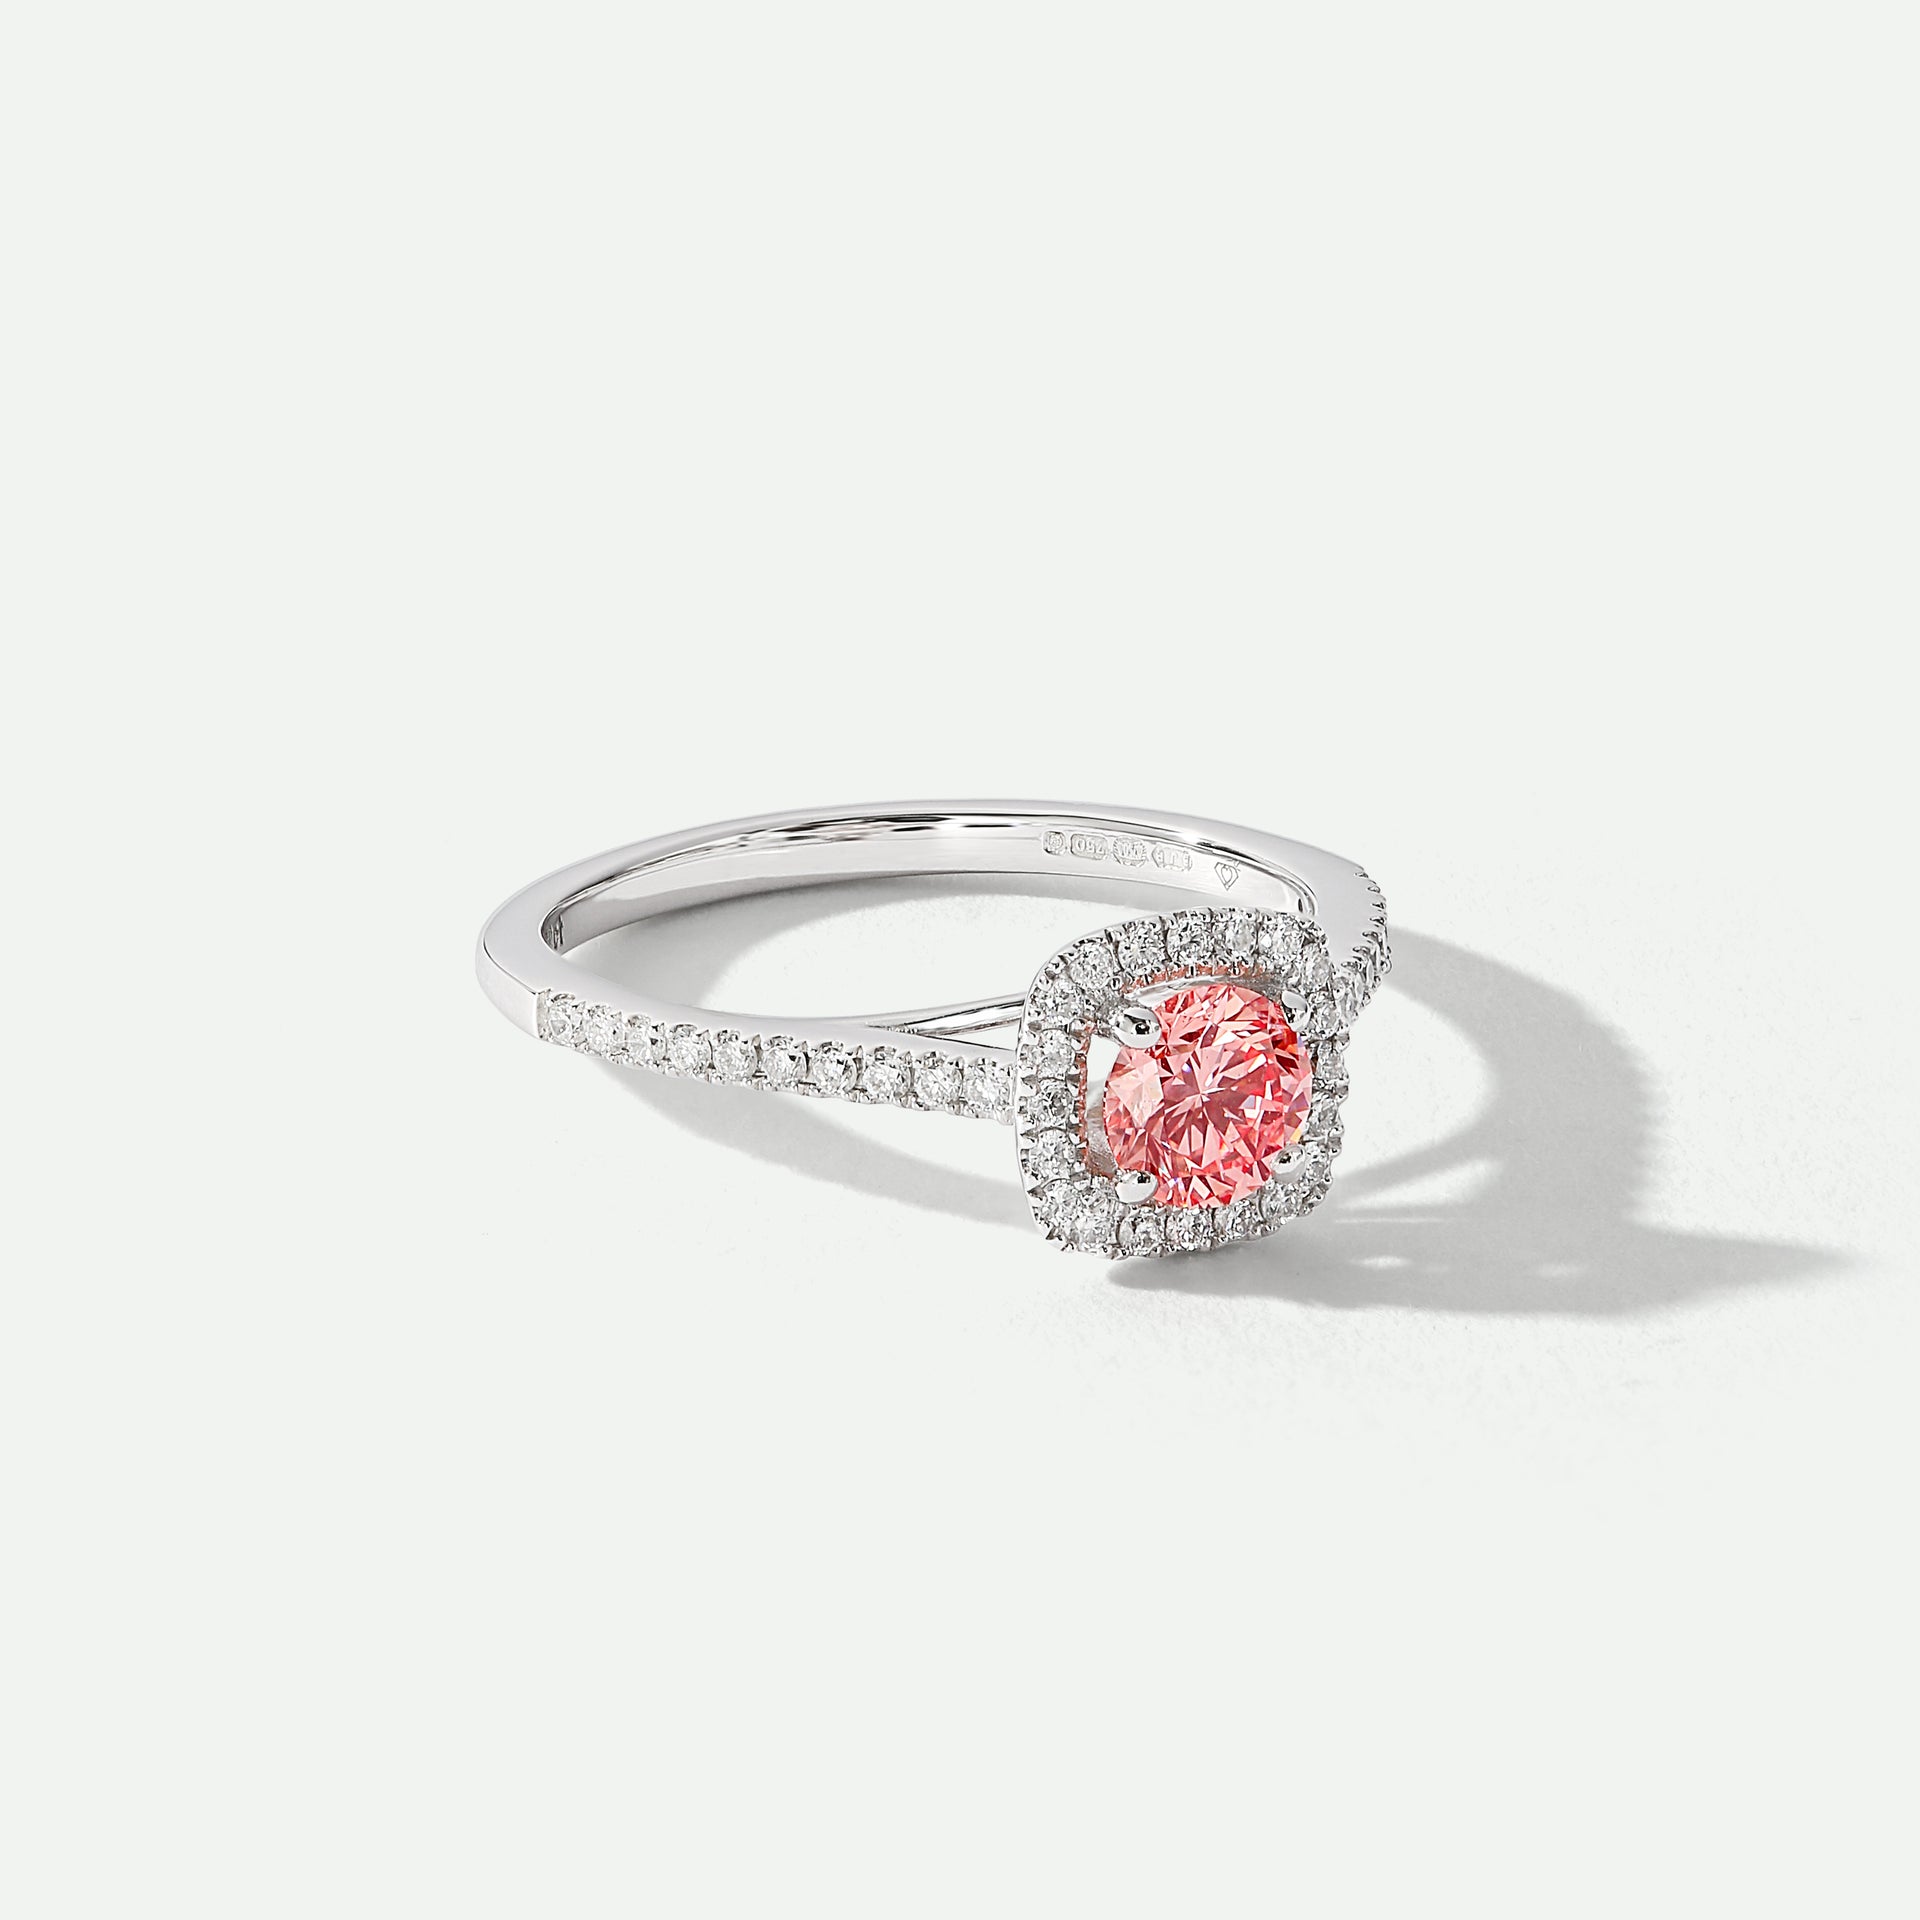 Cynthia | 18ct White Gold 0.70ct tw Lab Grown Pink Diamond Ring